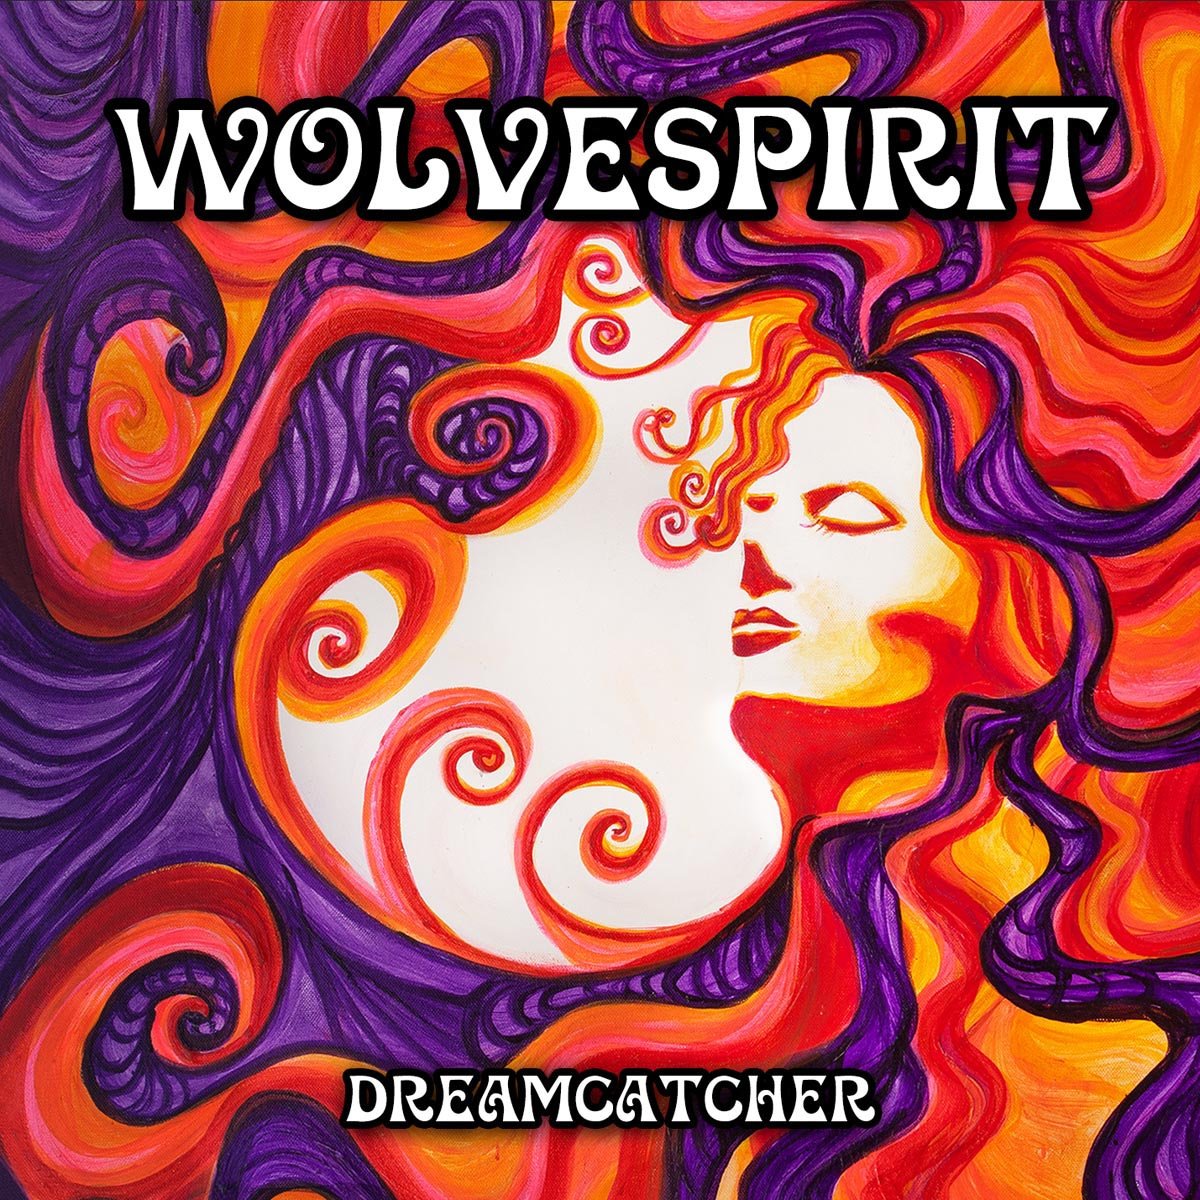 Wolvespirit-Dreamcatcher-CD-FLAC-2015-6DM